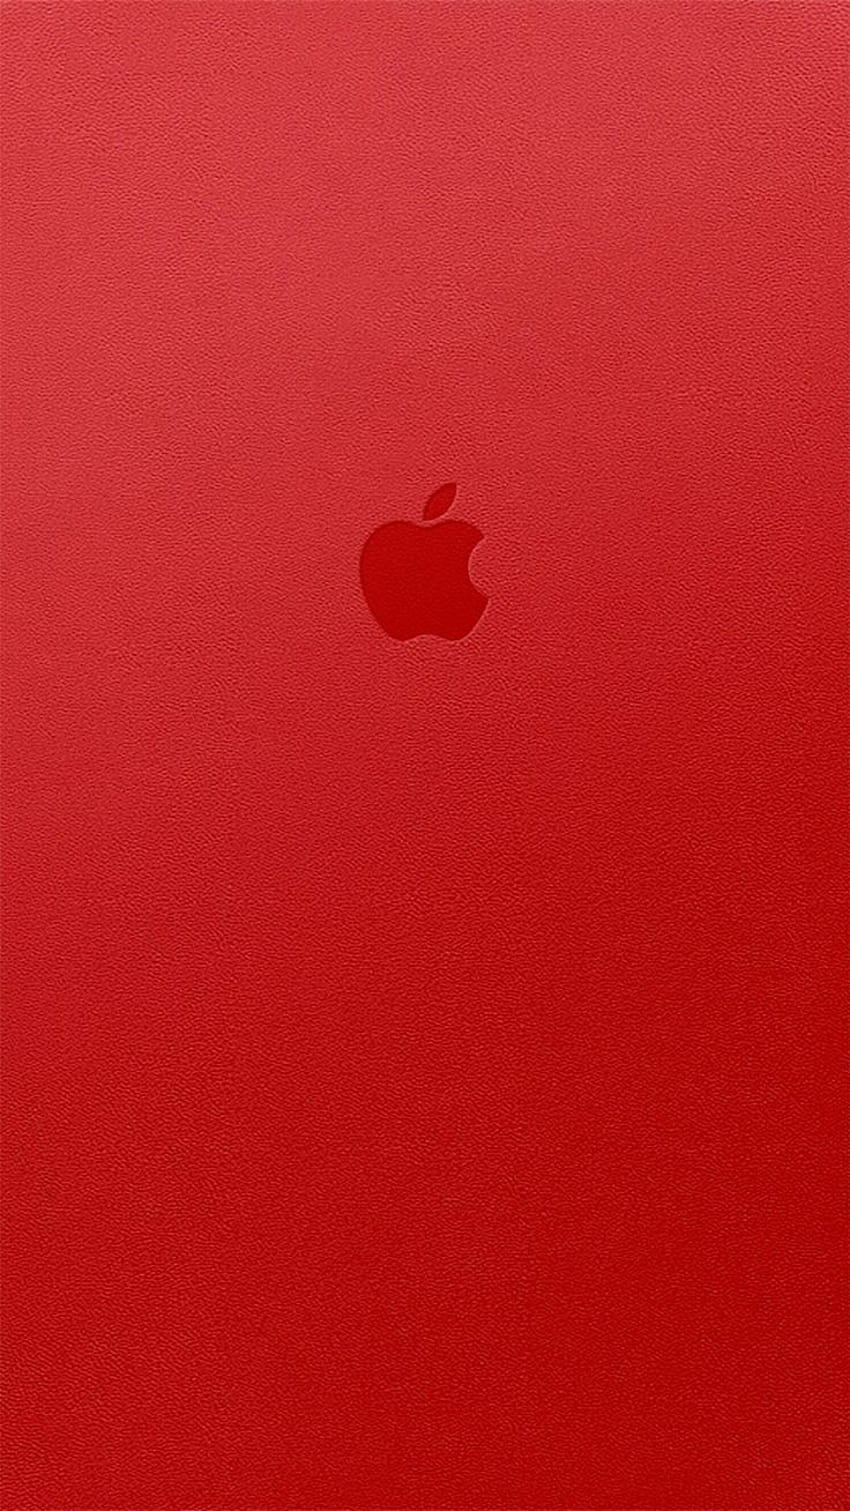 Apple iPhone 6s Plus rojo, logotipo rojo de Apple 6 fondo de pantalla del teléfono